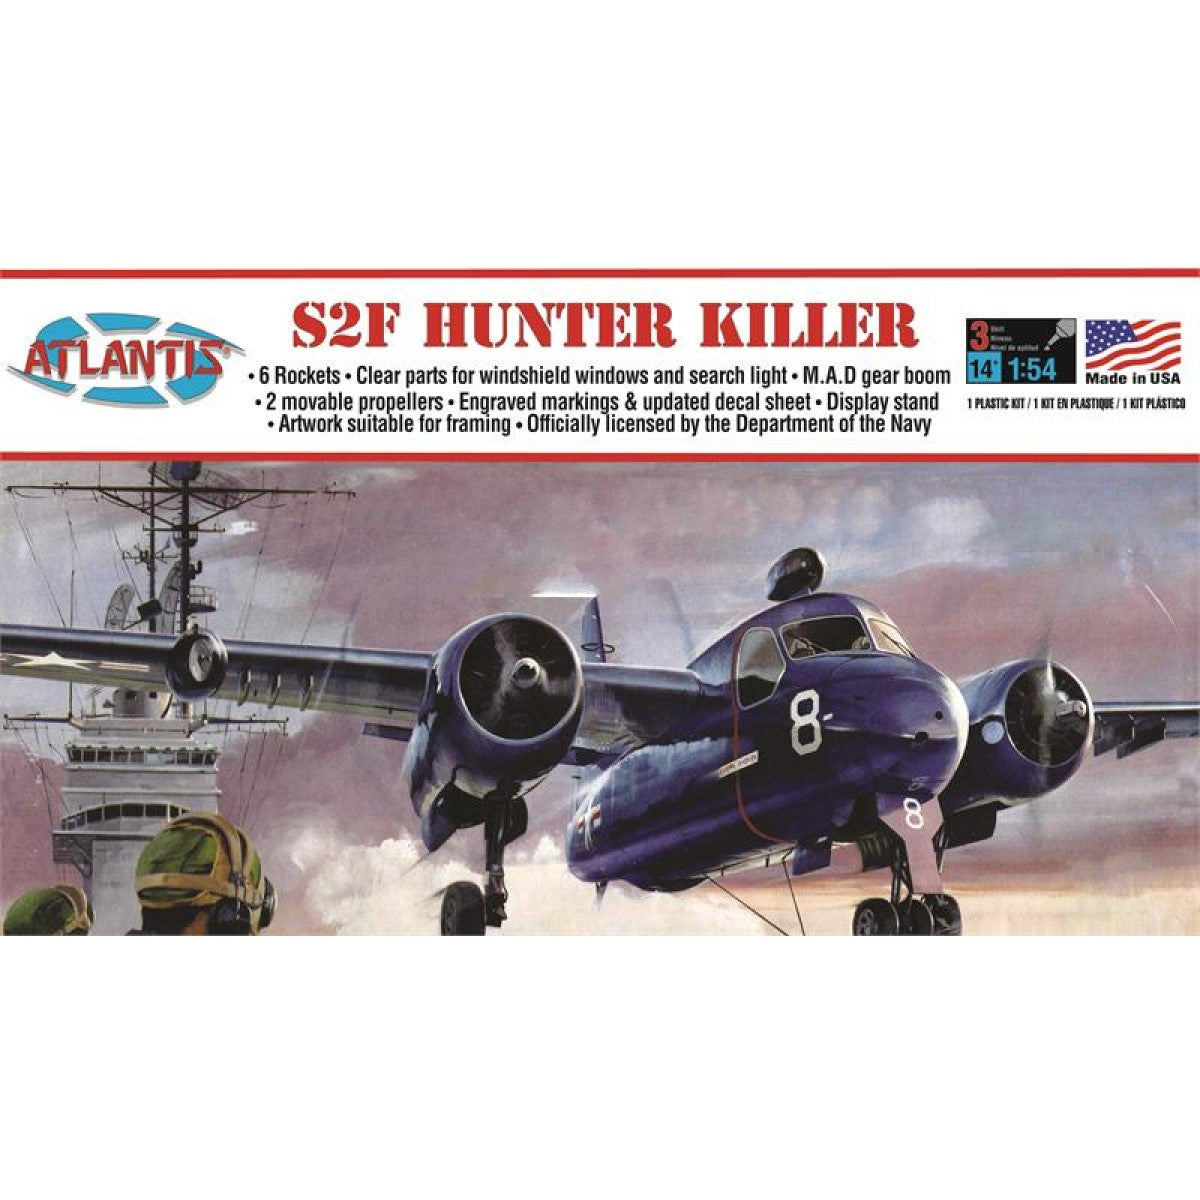 Atlantis 1/54 US Navy Grumman S2F Hunter Killer A145